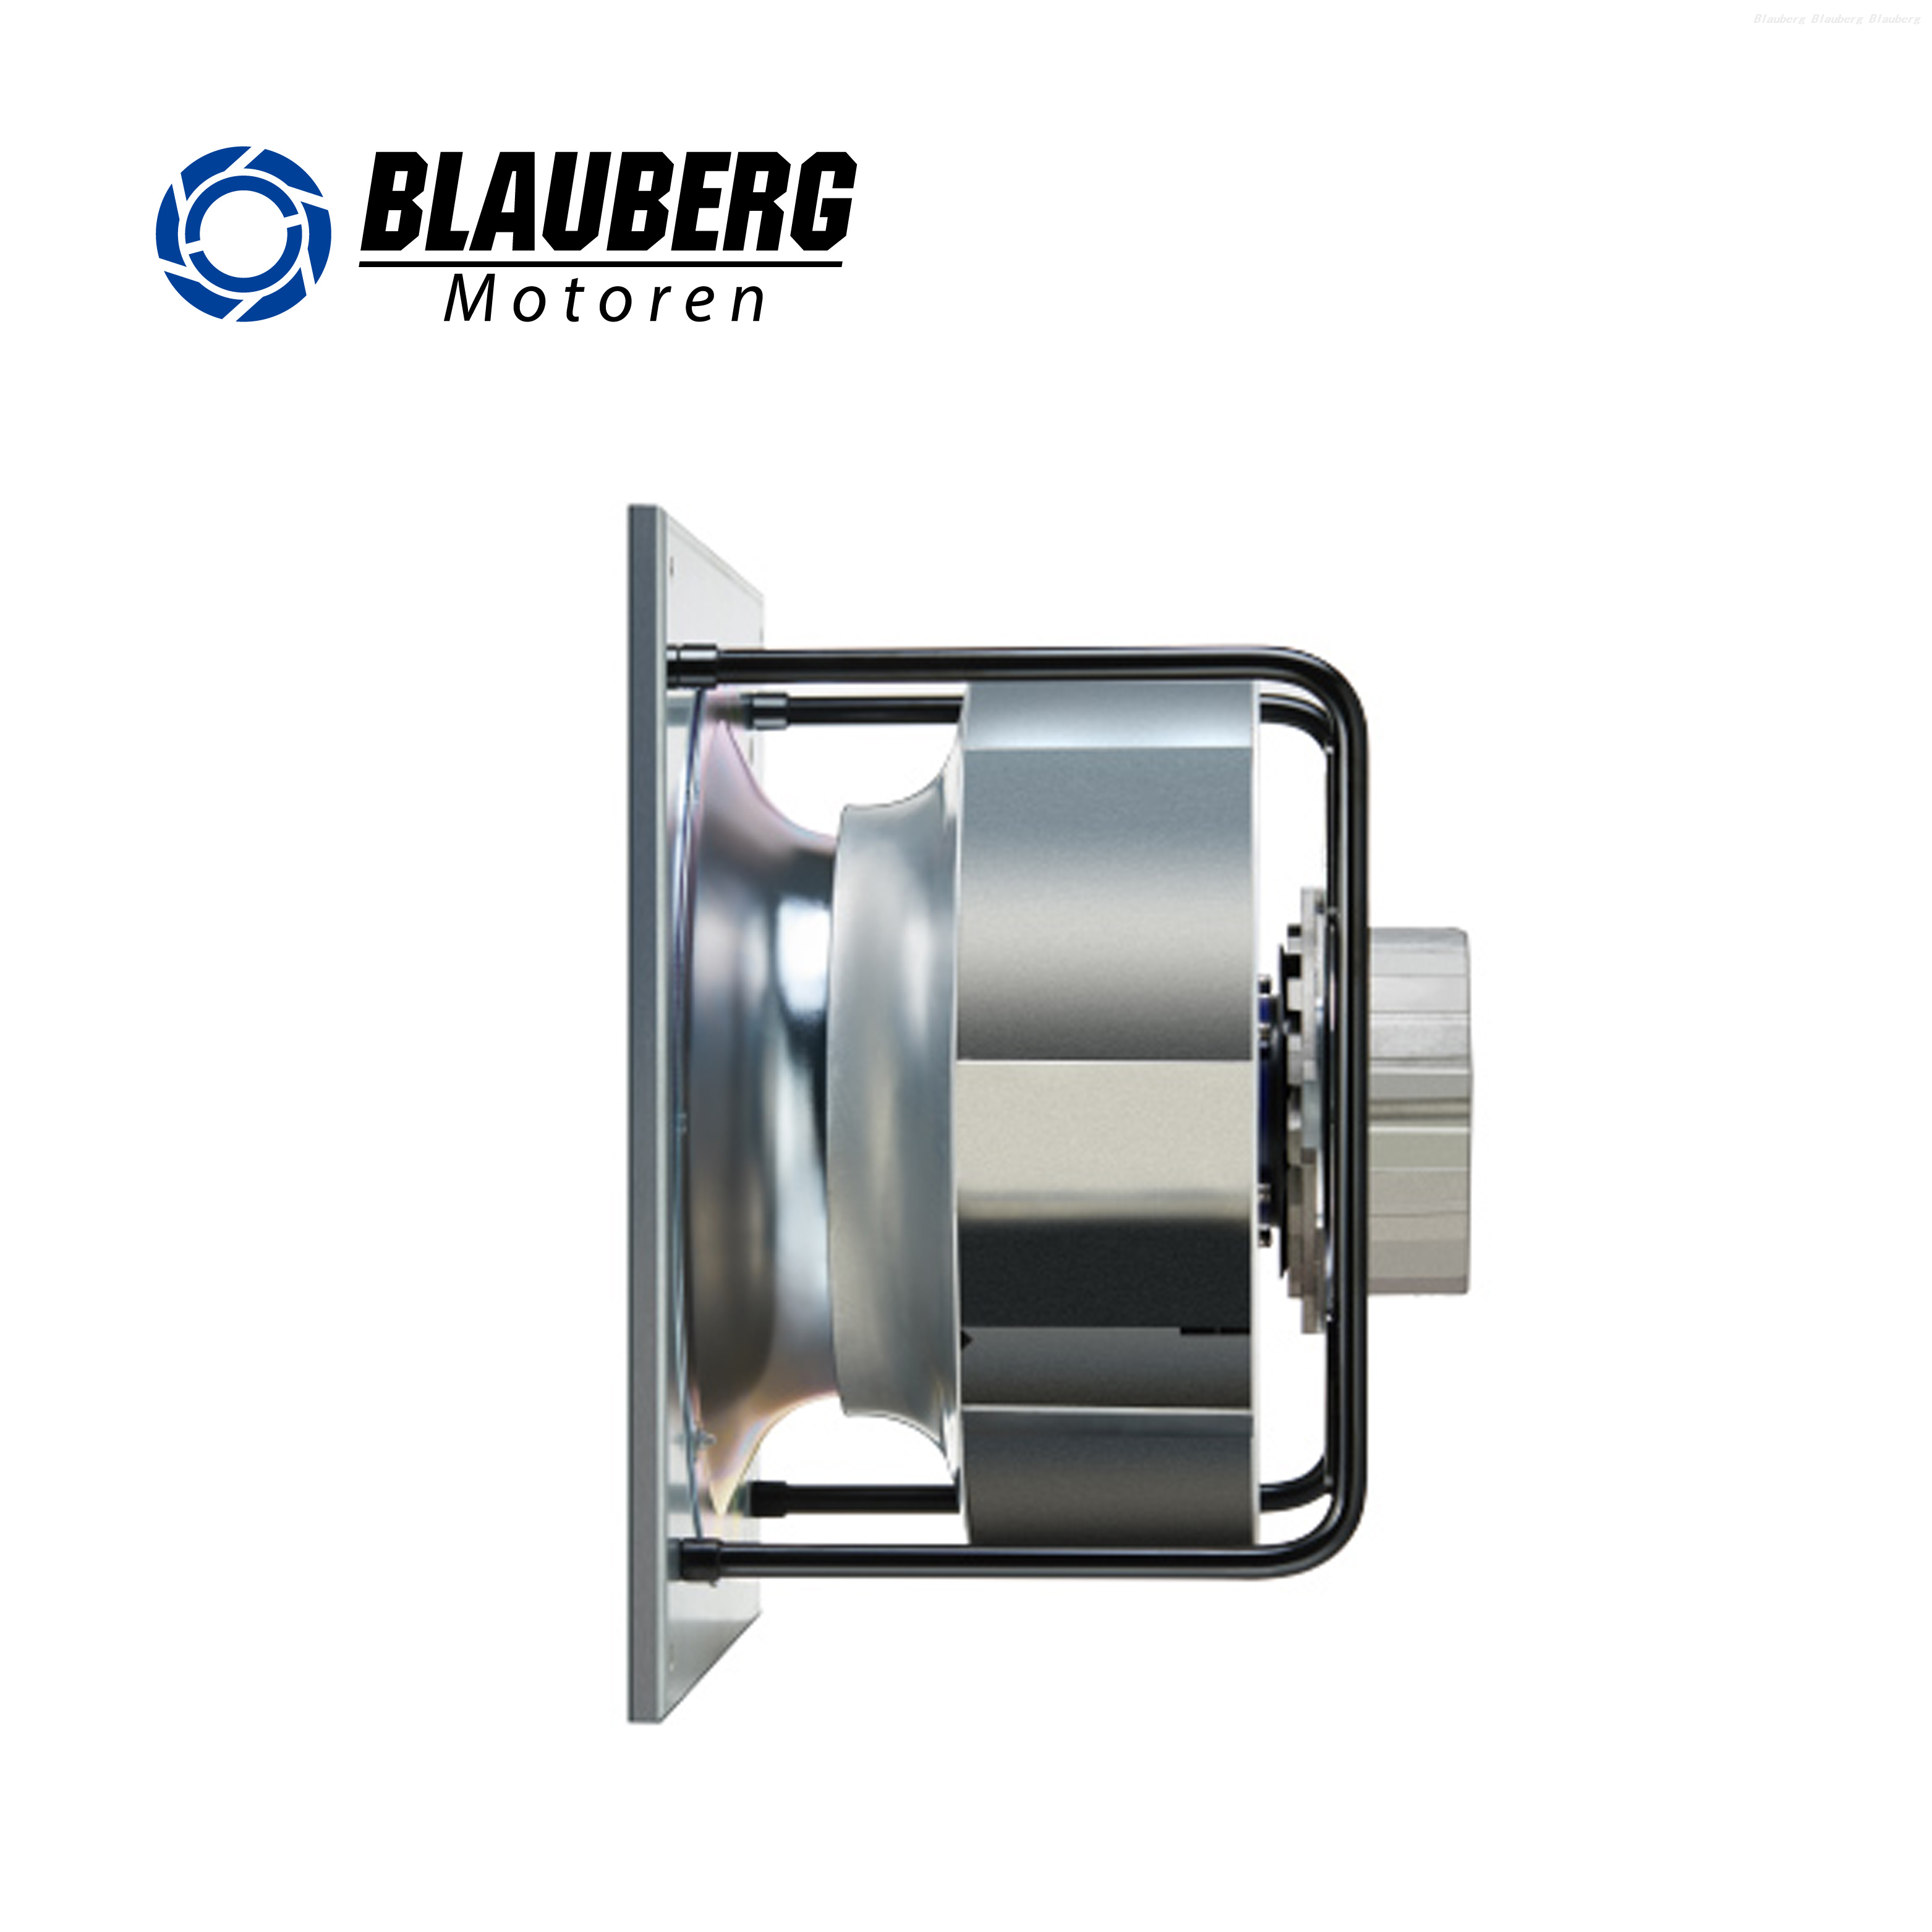 Blauberg Industrial Factory Plastic 280mm plug centrifugal fan FFU Fan air conditioner blower